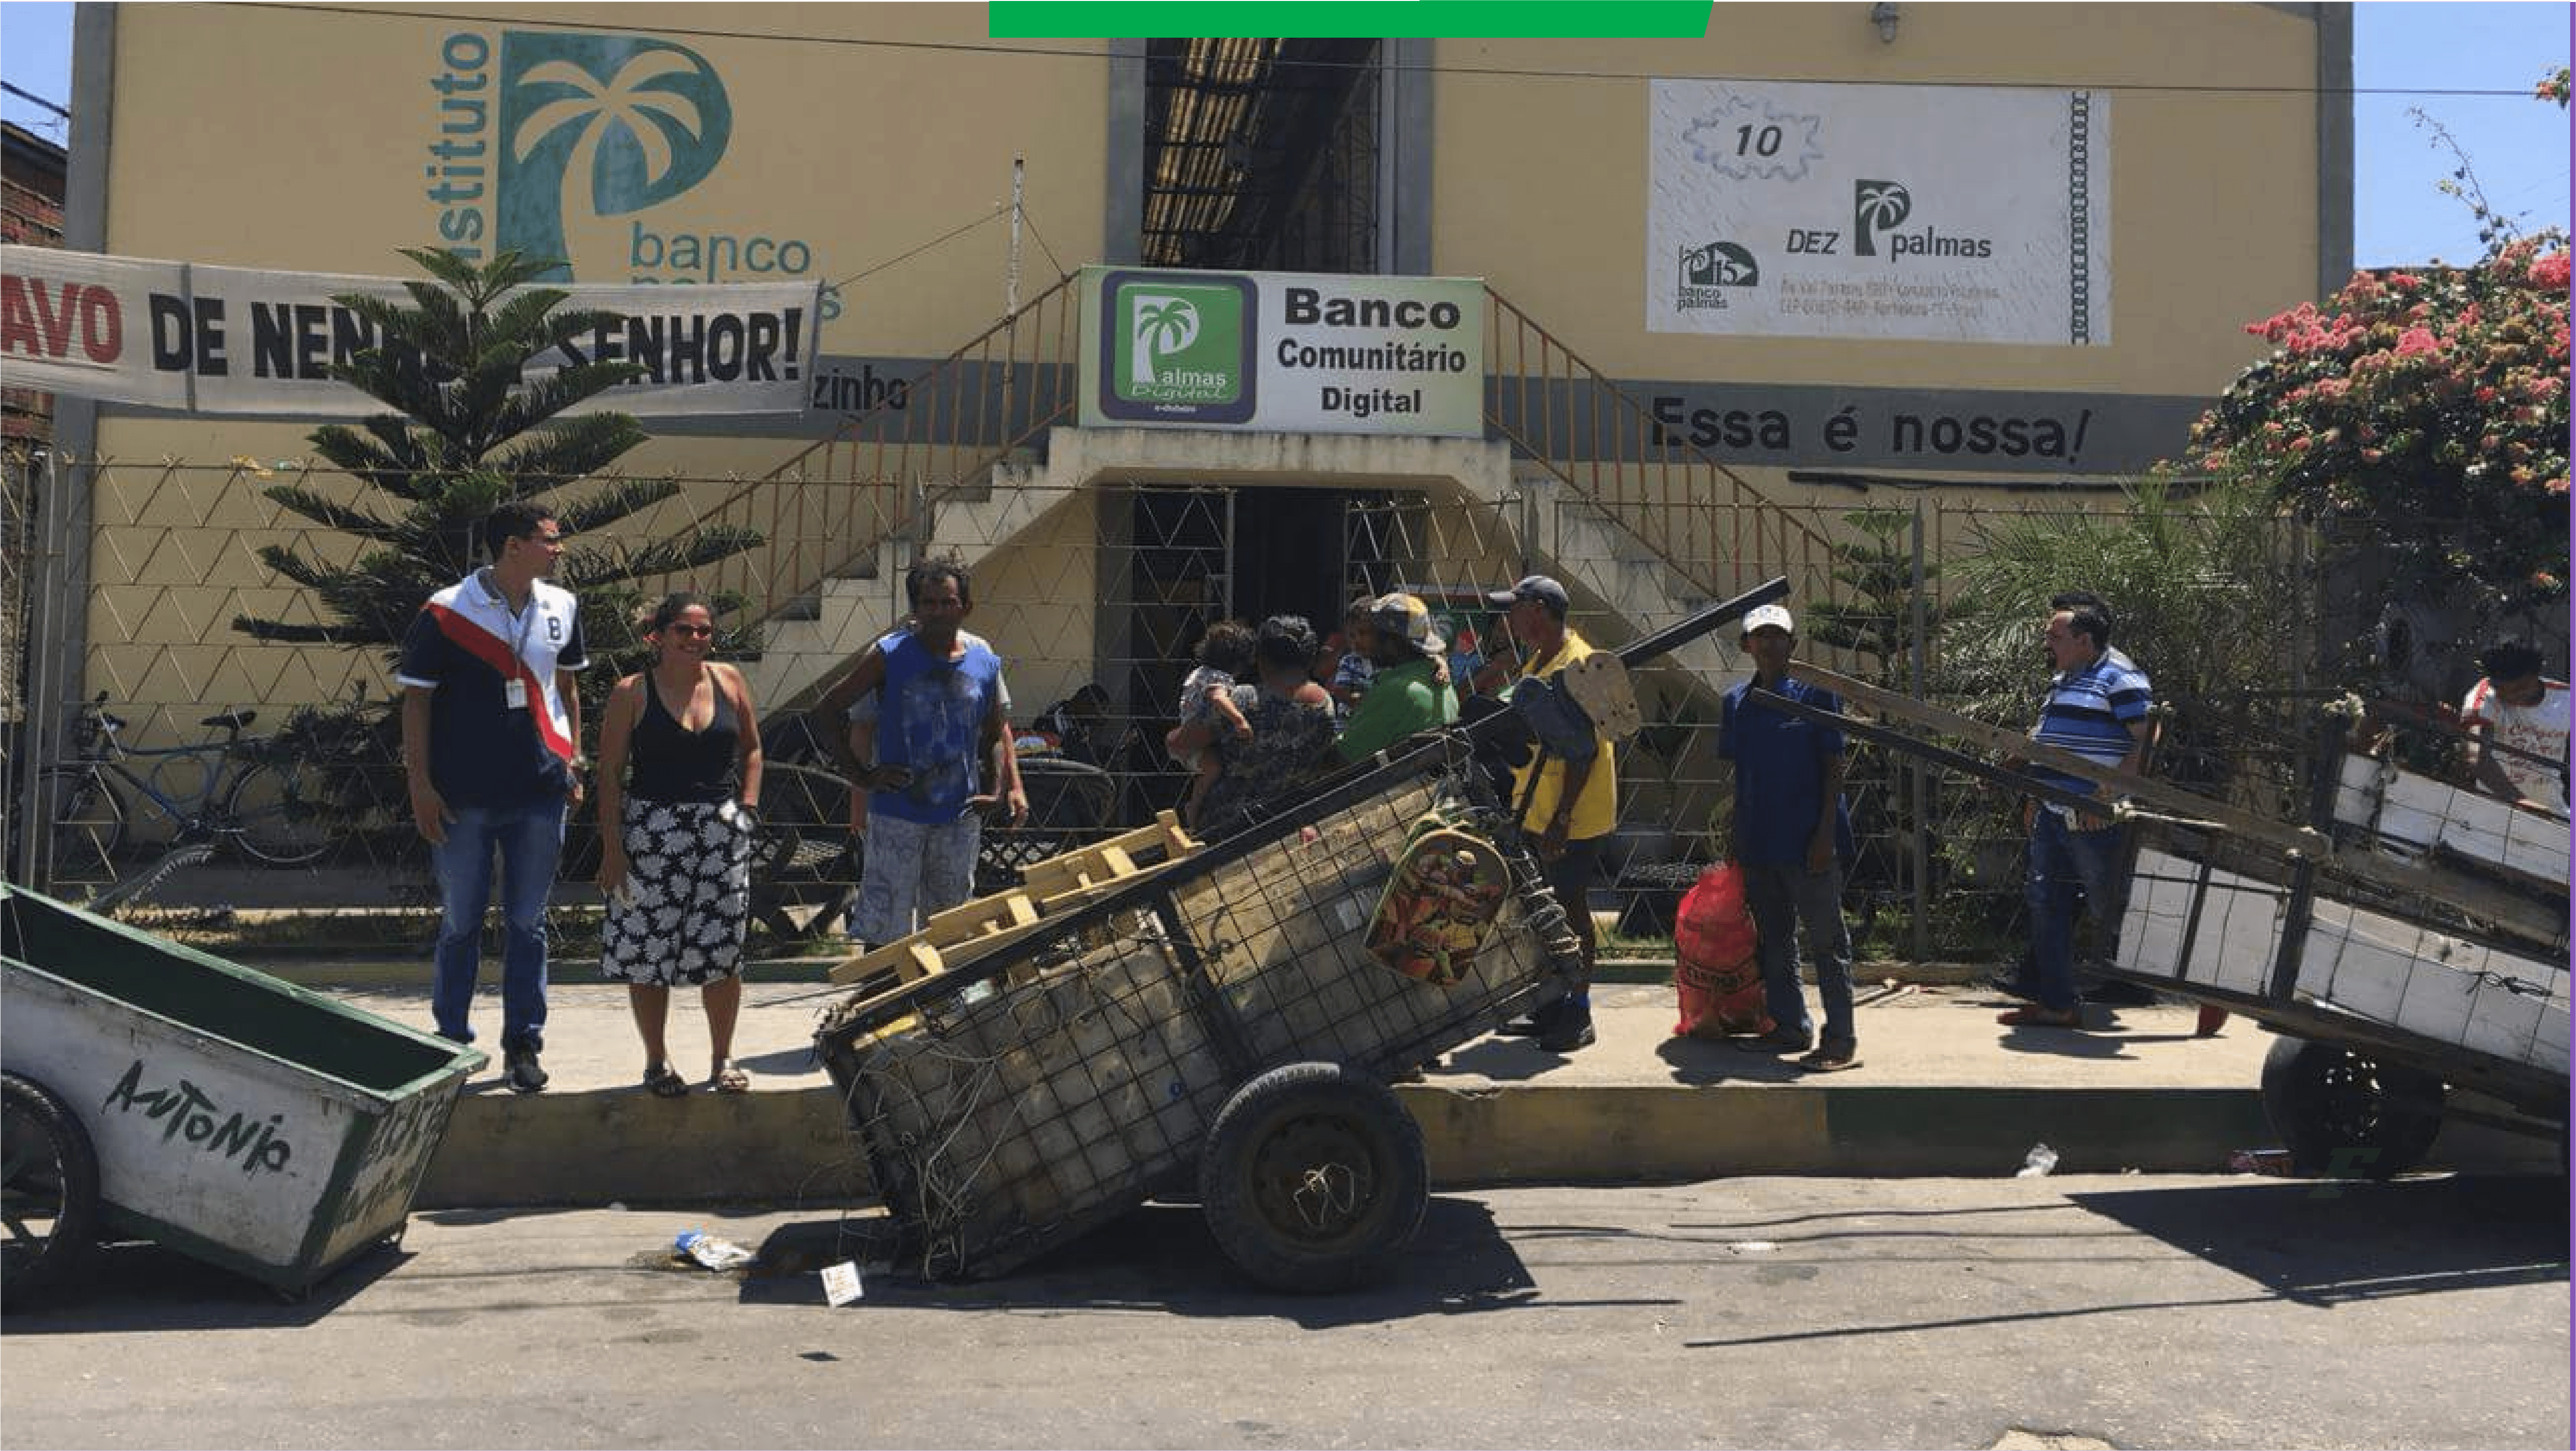 Três carroças e algumas pessoas estão paradas na frente de um prédio do Instituto Banco Palmas no qual há uma placa escrita banco comunitário digital.